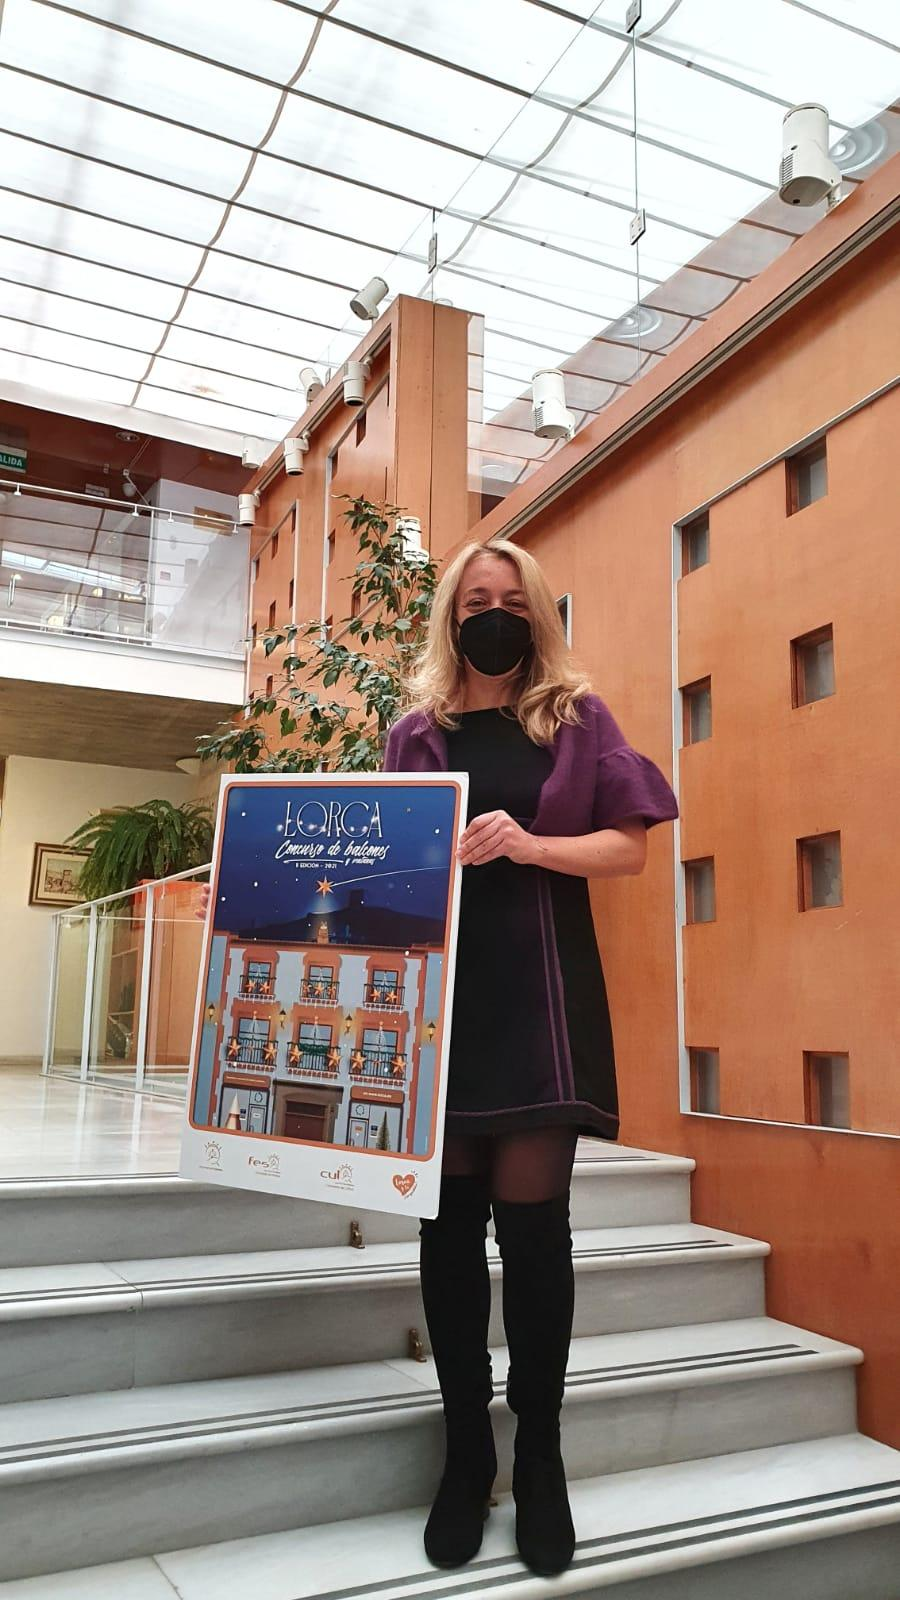 El Ayuntamiento de Lorca organiza el ‘II Concurso Navideño para decorar balcones y ventanas’ con el objetivo de crear ambiente festivo en las calles de la ciudad